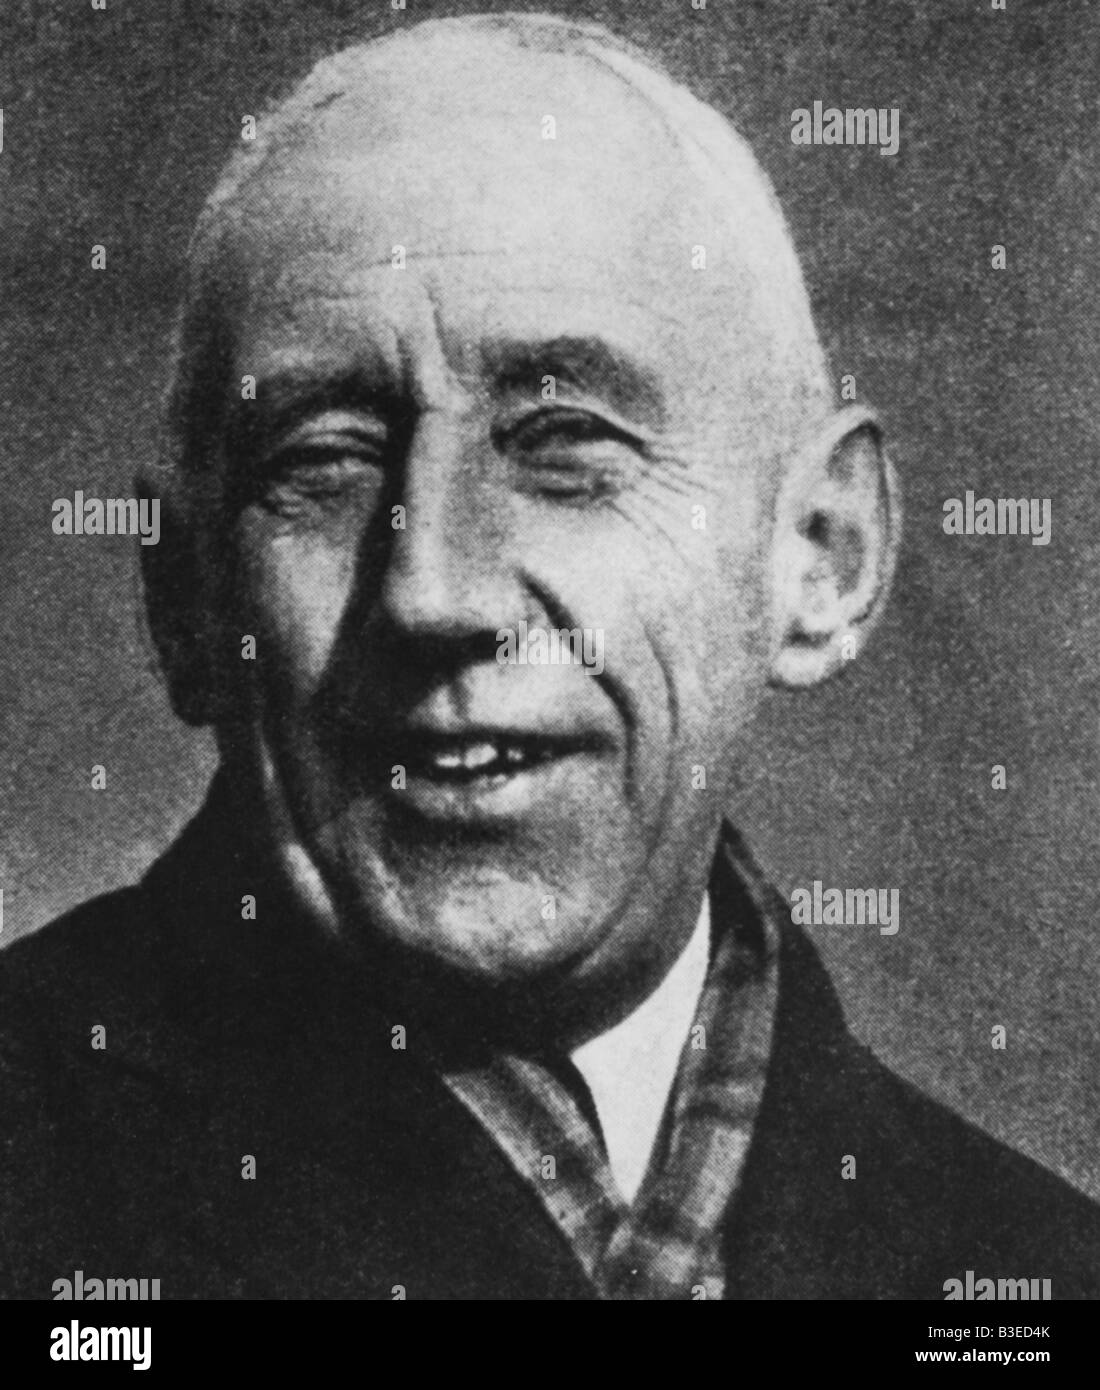 Amundsen, Roald 16.7.1872 - Giugno 1928, esploratore norvegese, ritratto, antartico, polo sud, , Foto Stock